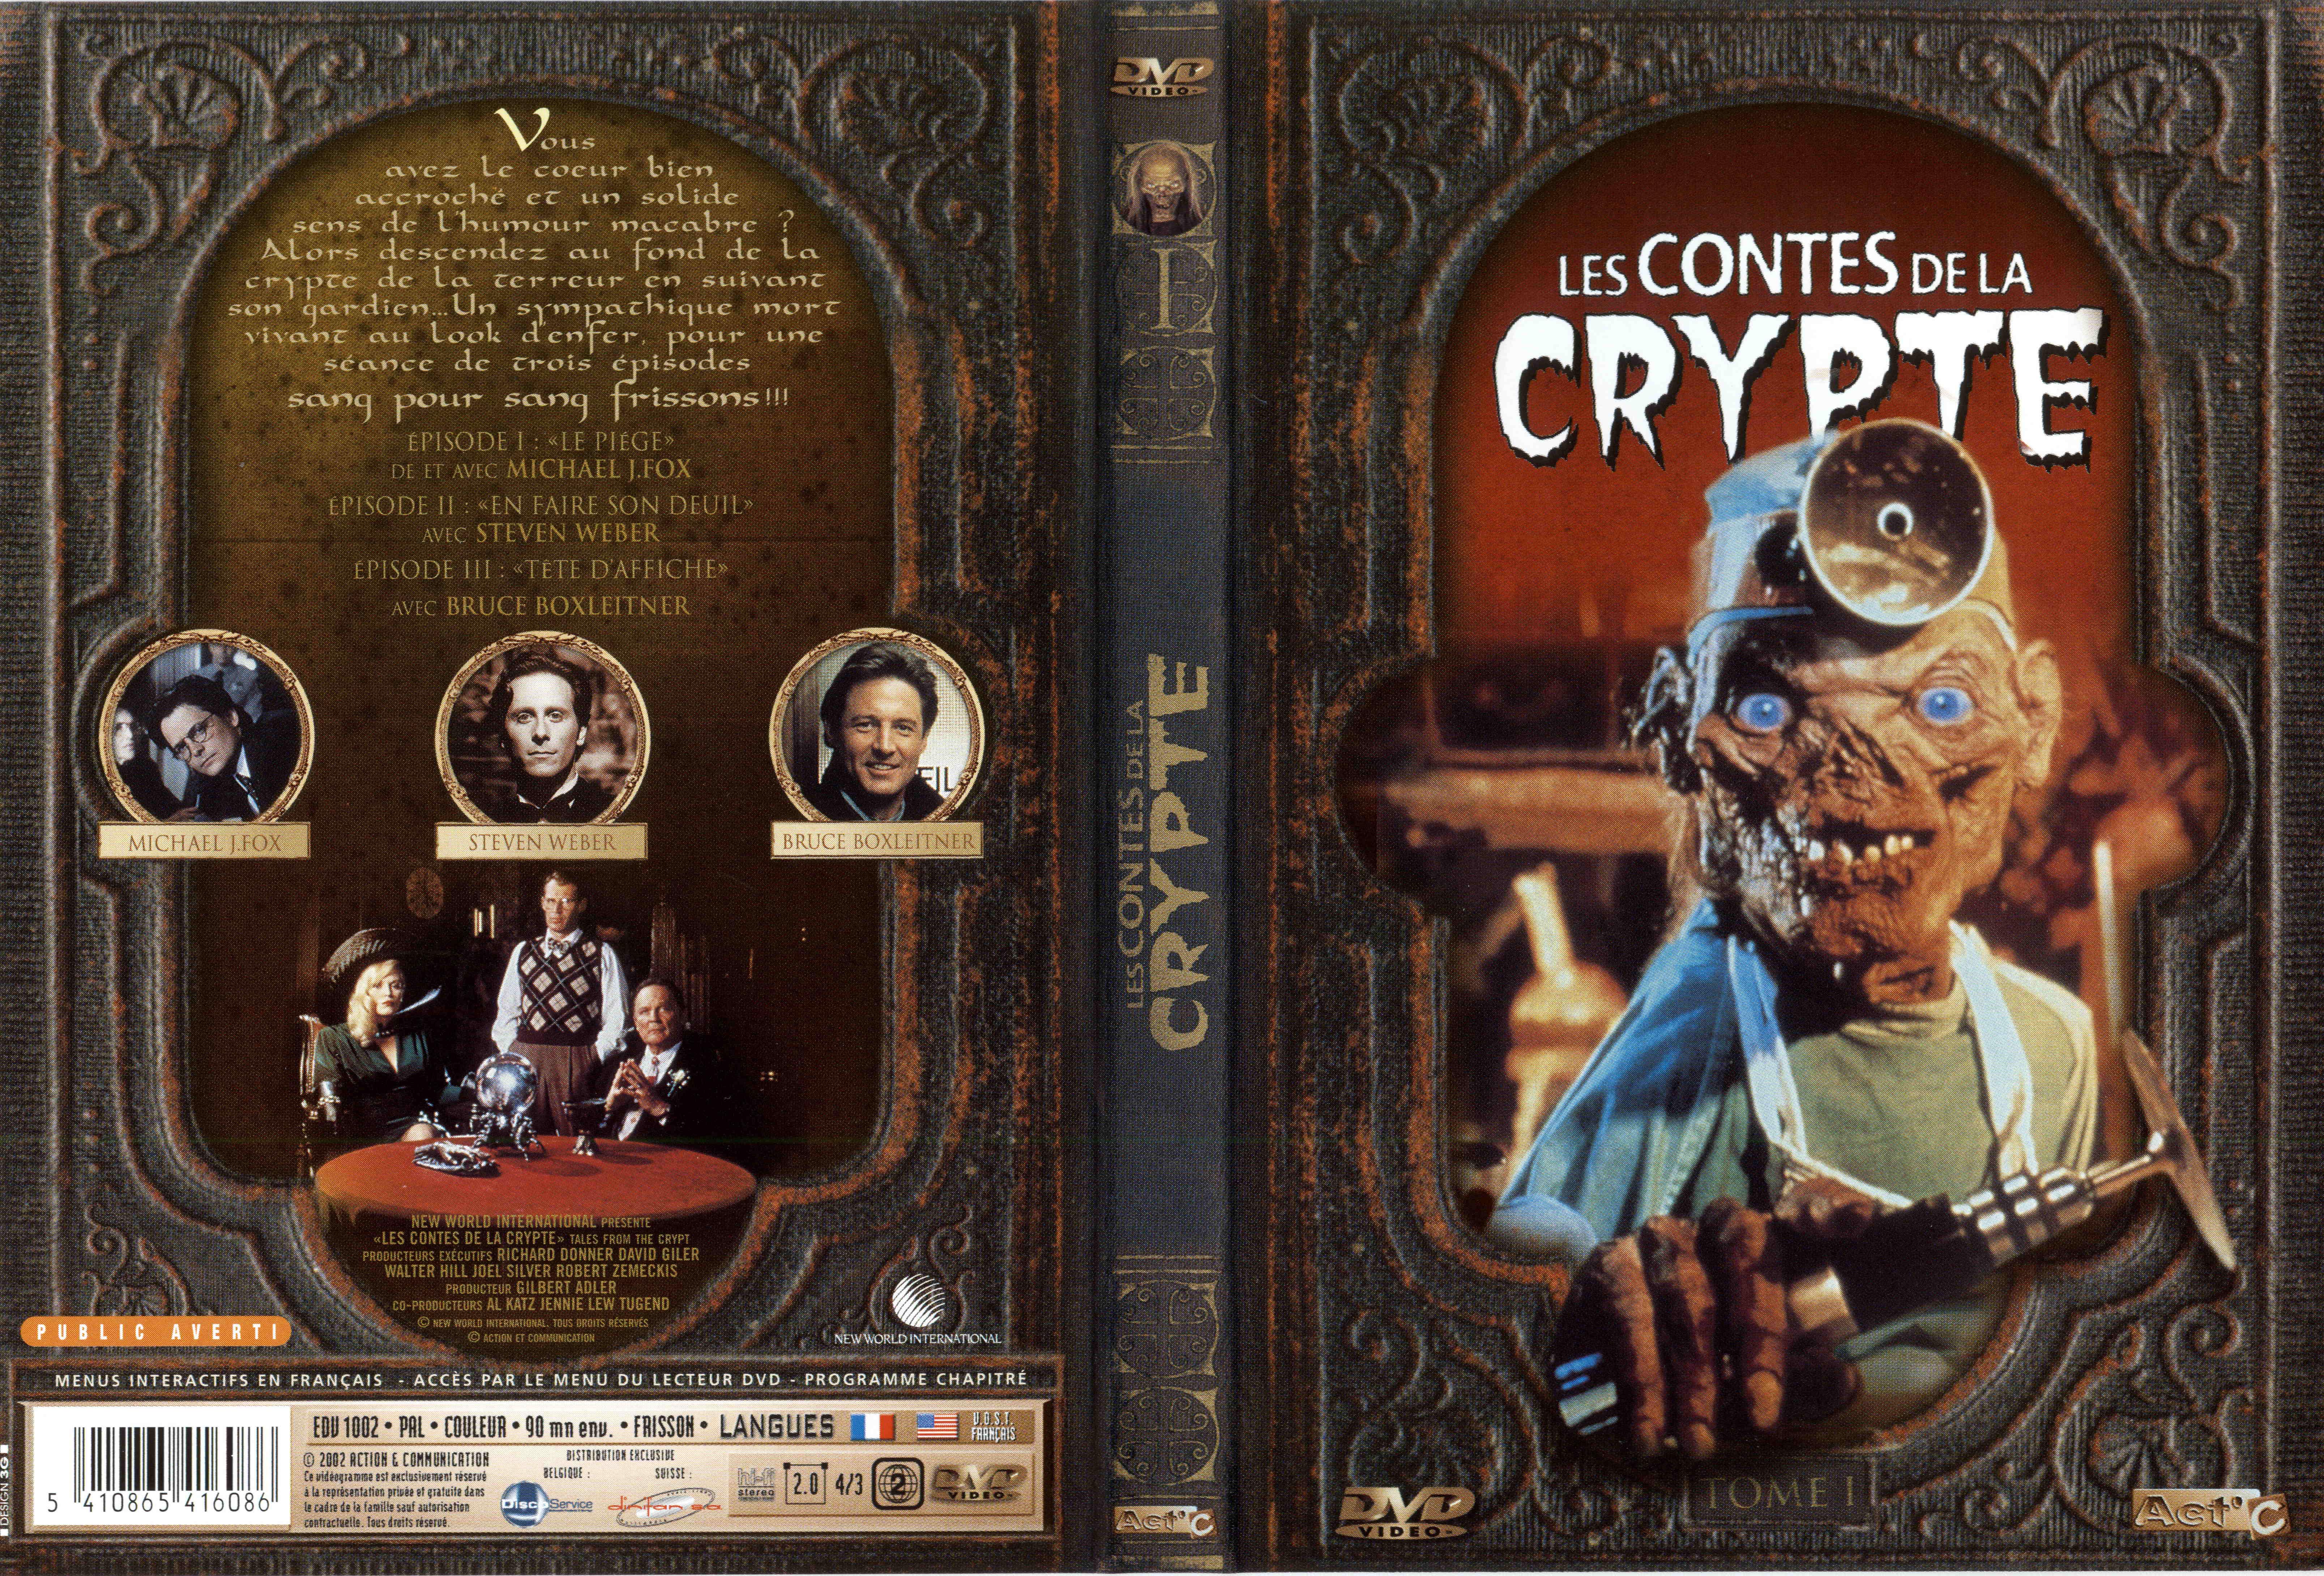 Jaquette DVD Les contes de la crypte vol 01 v2